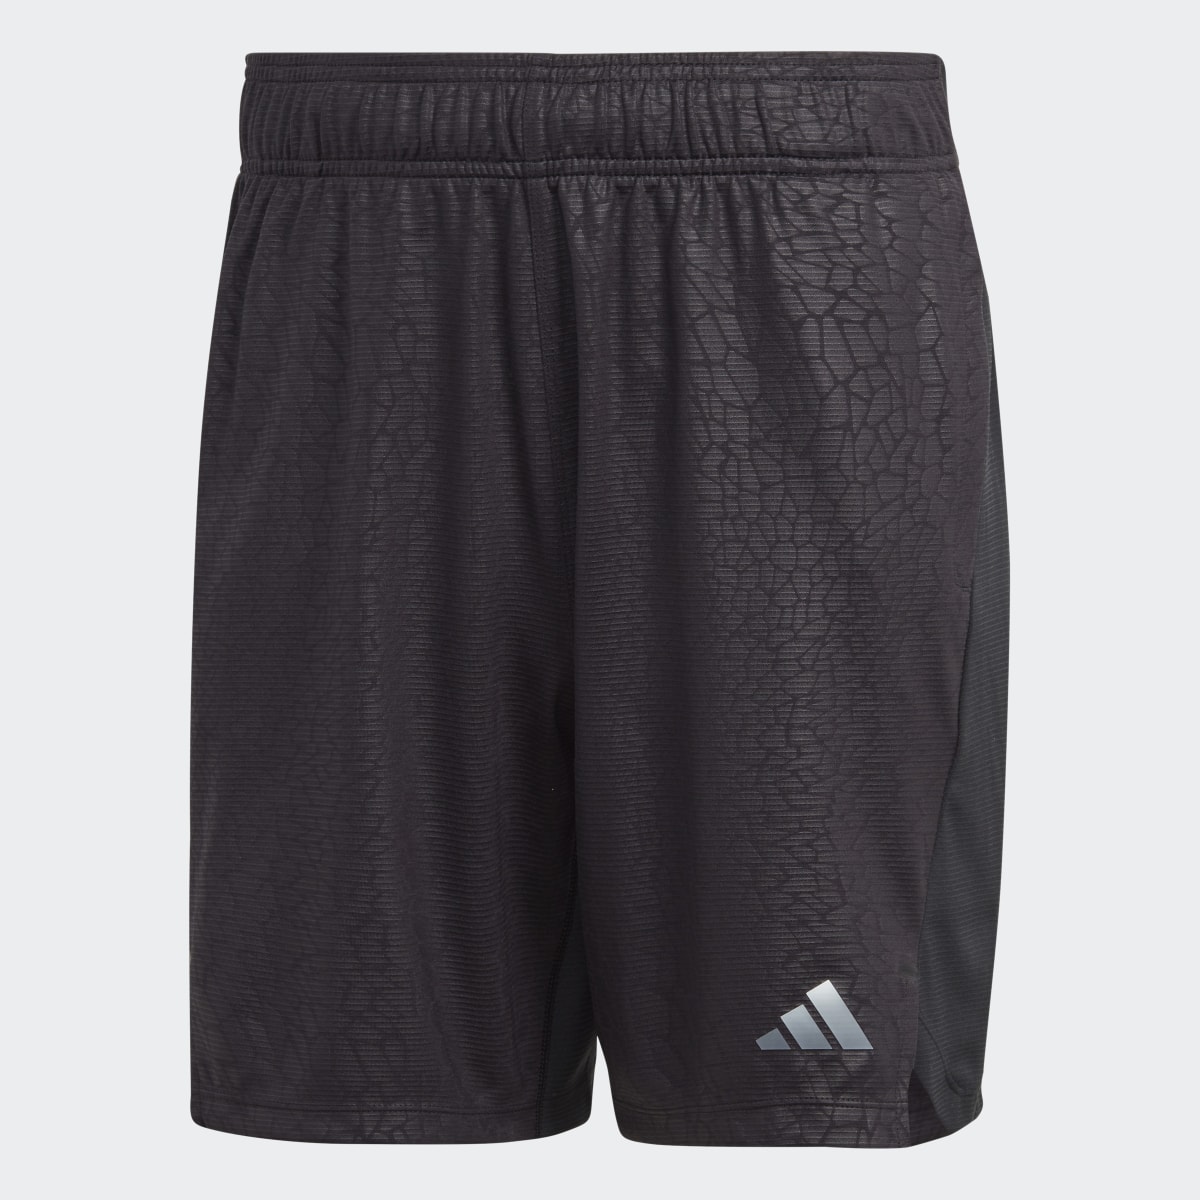 Adidas Workout PU Print Shorts. 4